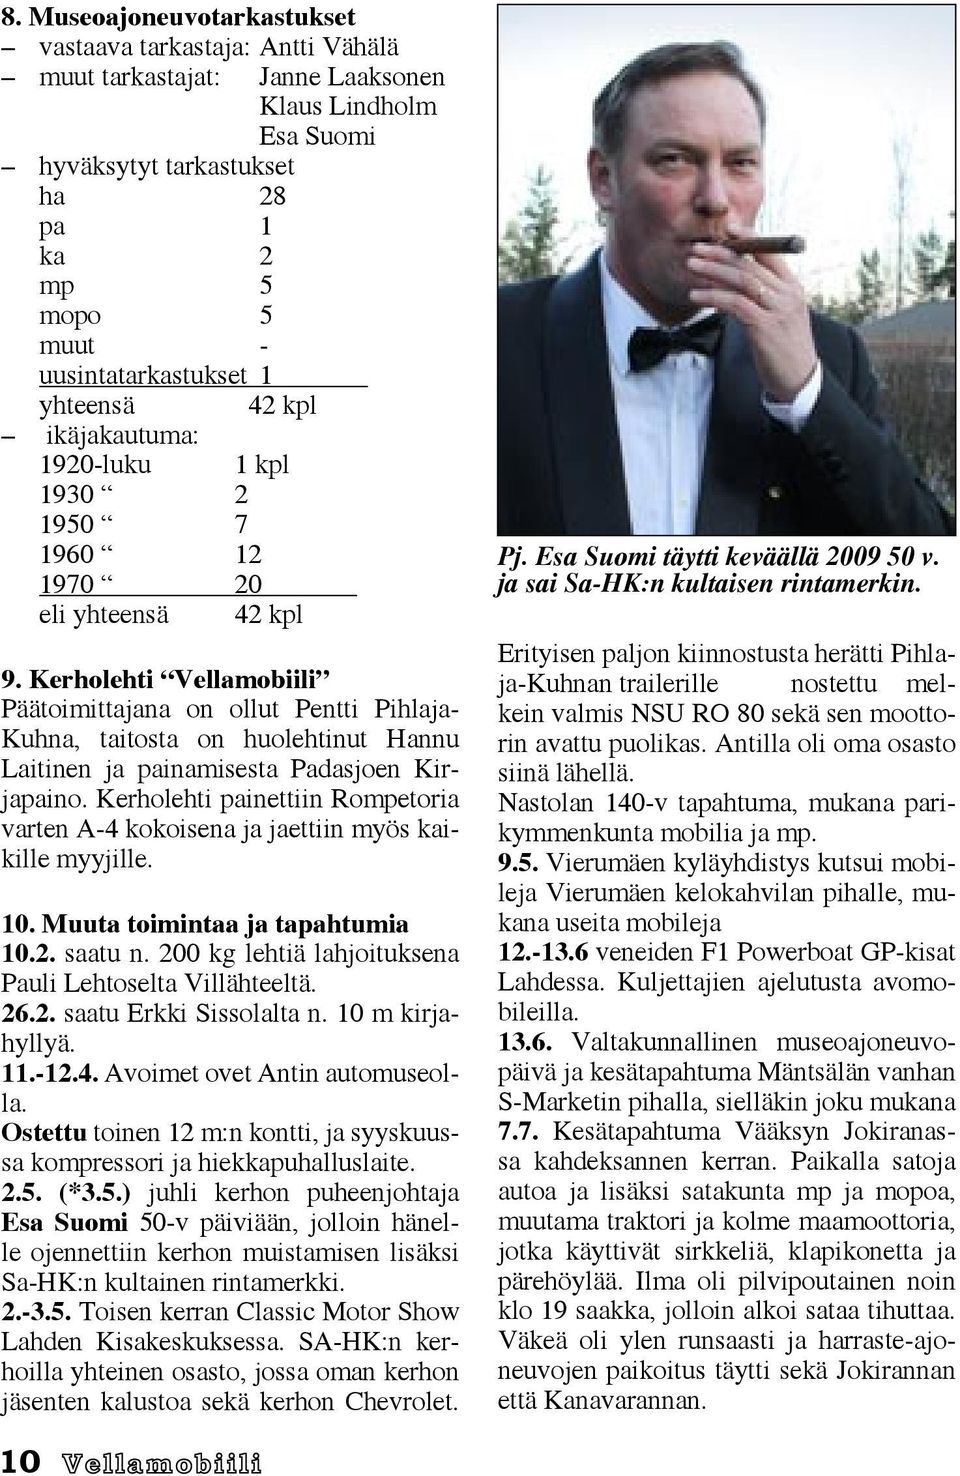 Kerholehti Vellamobiili Päätoimittajana on ollut Pentti Pihlaja- Kuhna, taitosta on huolehtinut Hannu Laitinen ja painamisesta Padasjoen Kirjapaino.